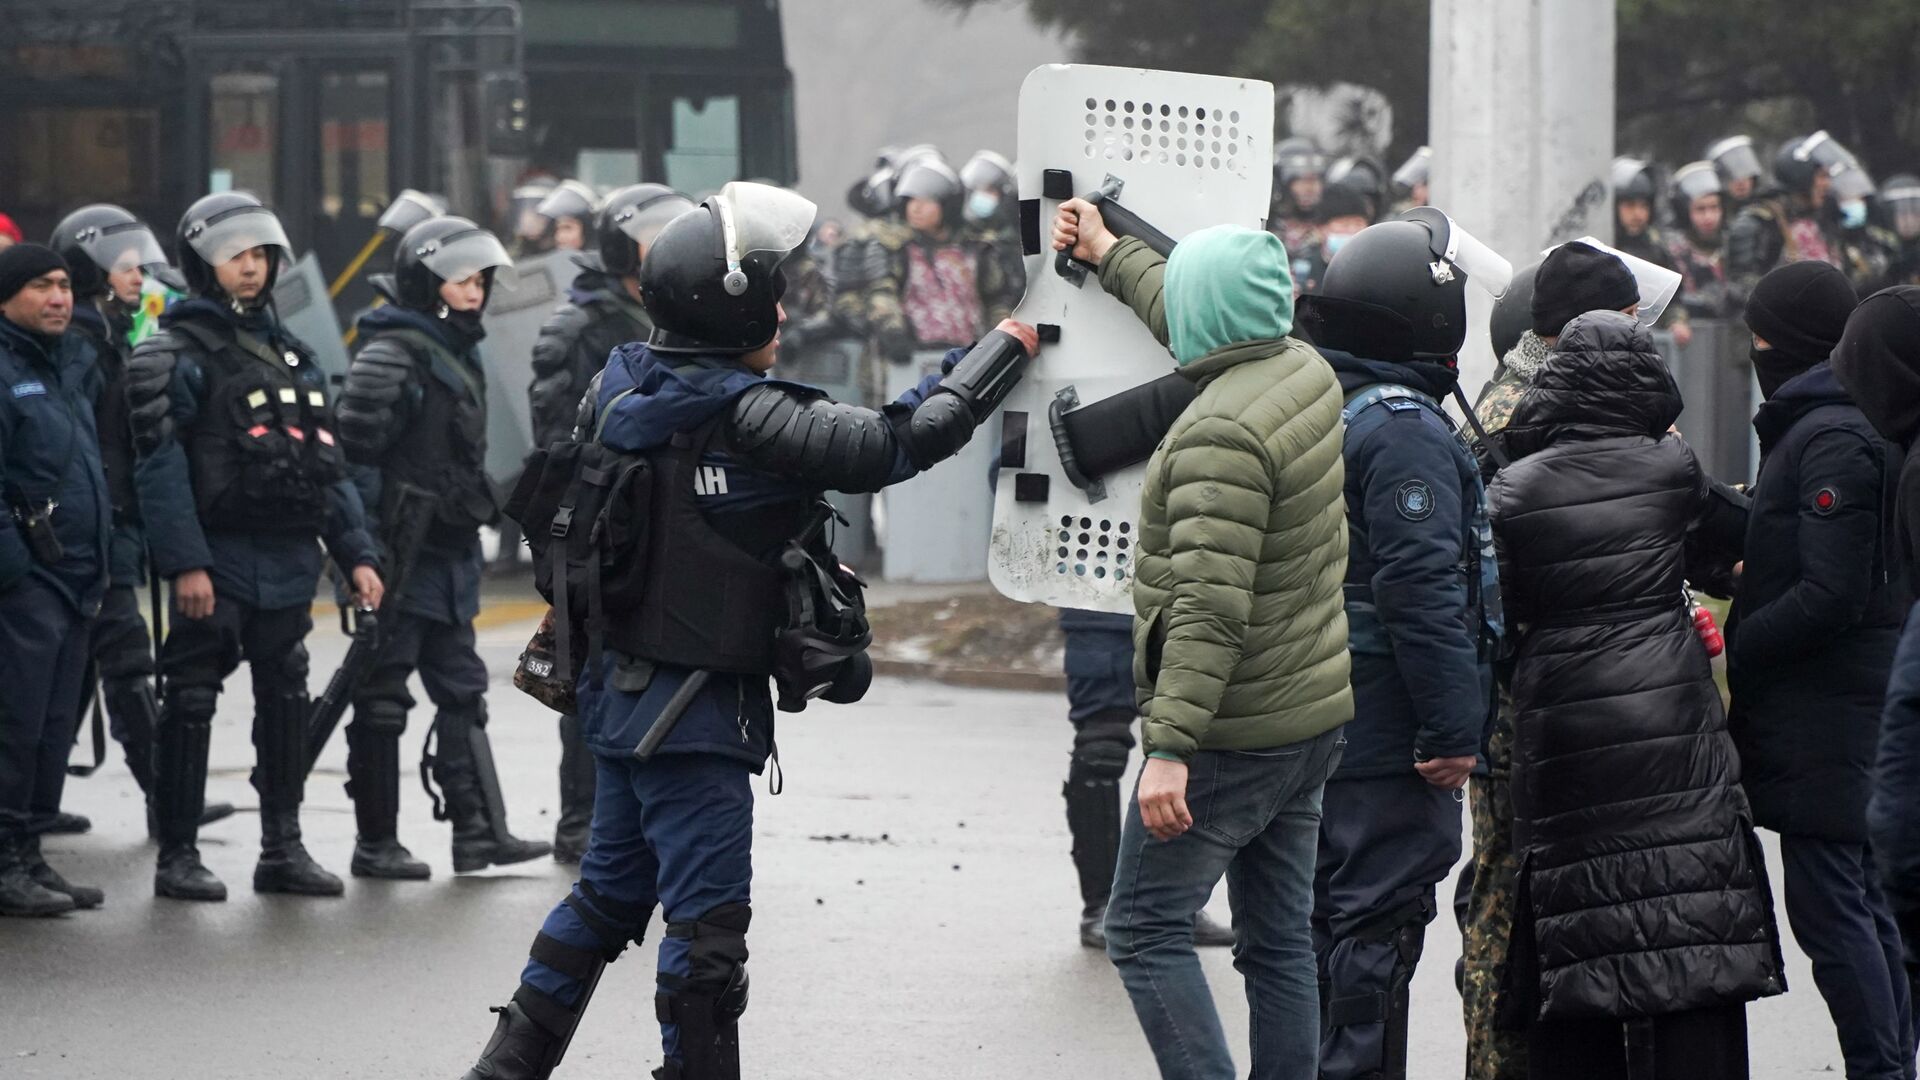 Демонстрант возвращает щит сотруднику ОМОНа во время акции протеста в Алматы, Казахстан, в среду, 5 января 2022 г.  - Sputnik Қазақстан, 1920, 13.01.2022